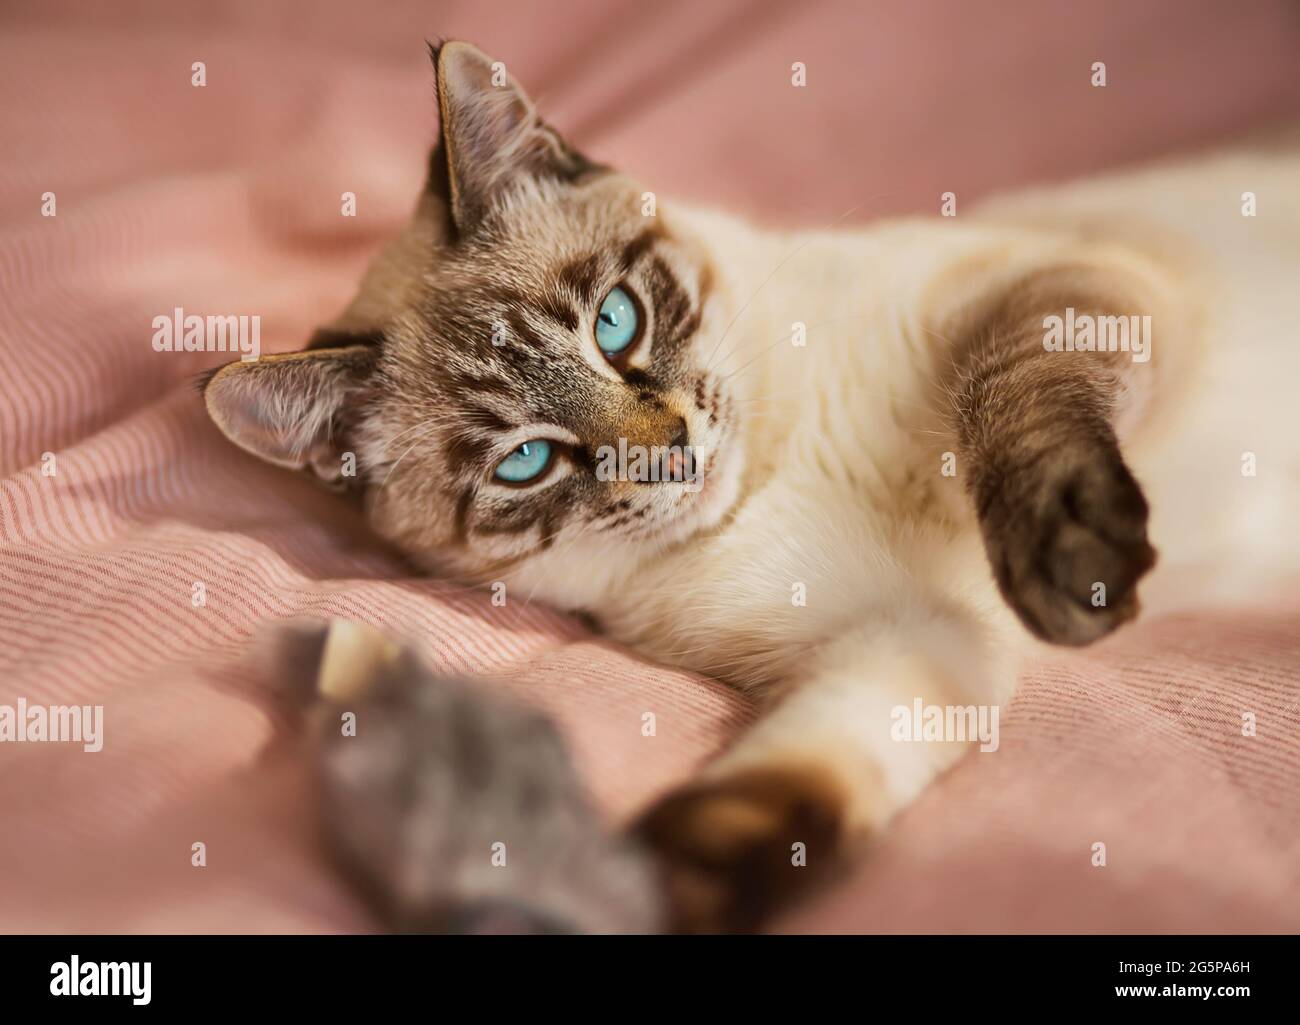 Un joli chaton thaïlandais rayé aux yeux bleus est lazly couché sur une couverture rose sur le lit et joue avec un jouet de souris moelleux. Un animal de compagnie et un jouet. Banque D'Images